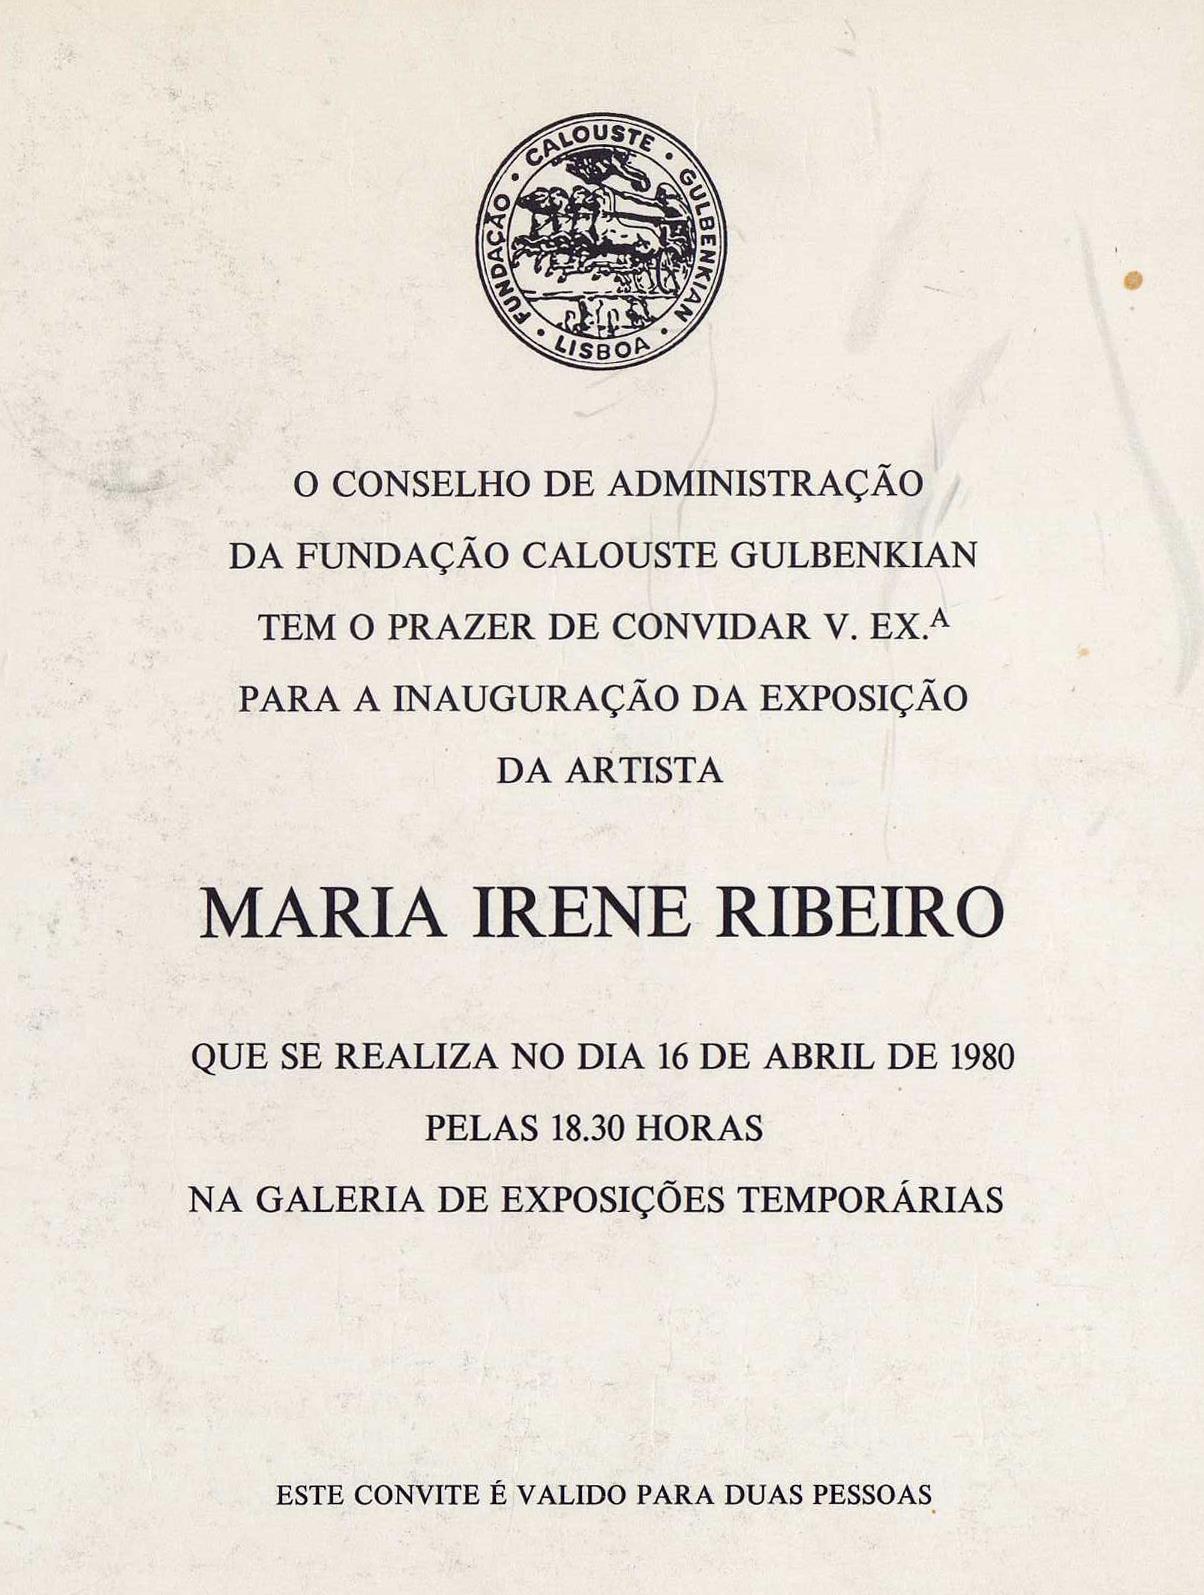 Maria Irene Ribeiro